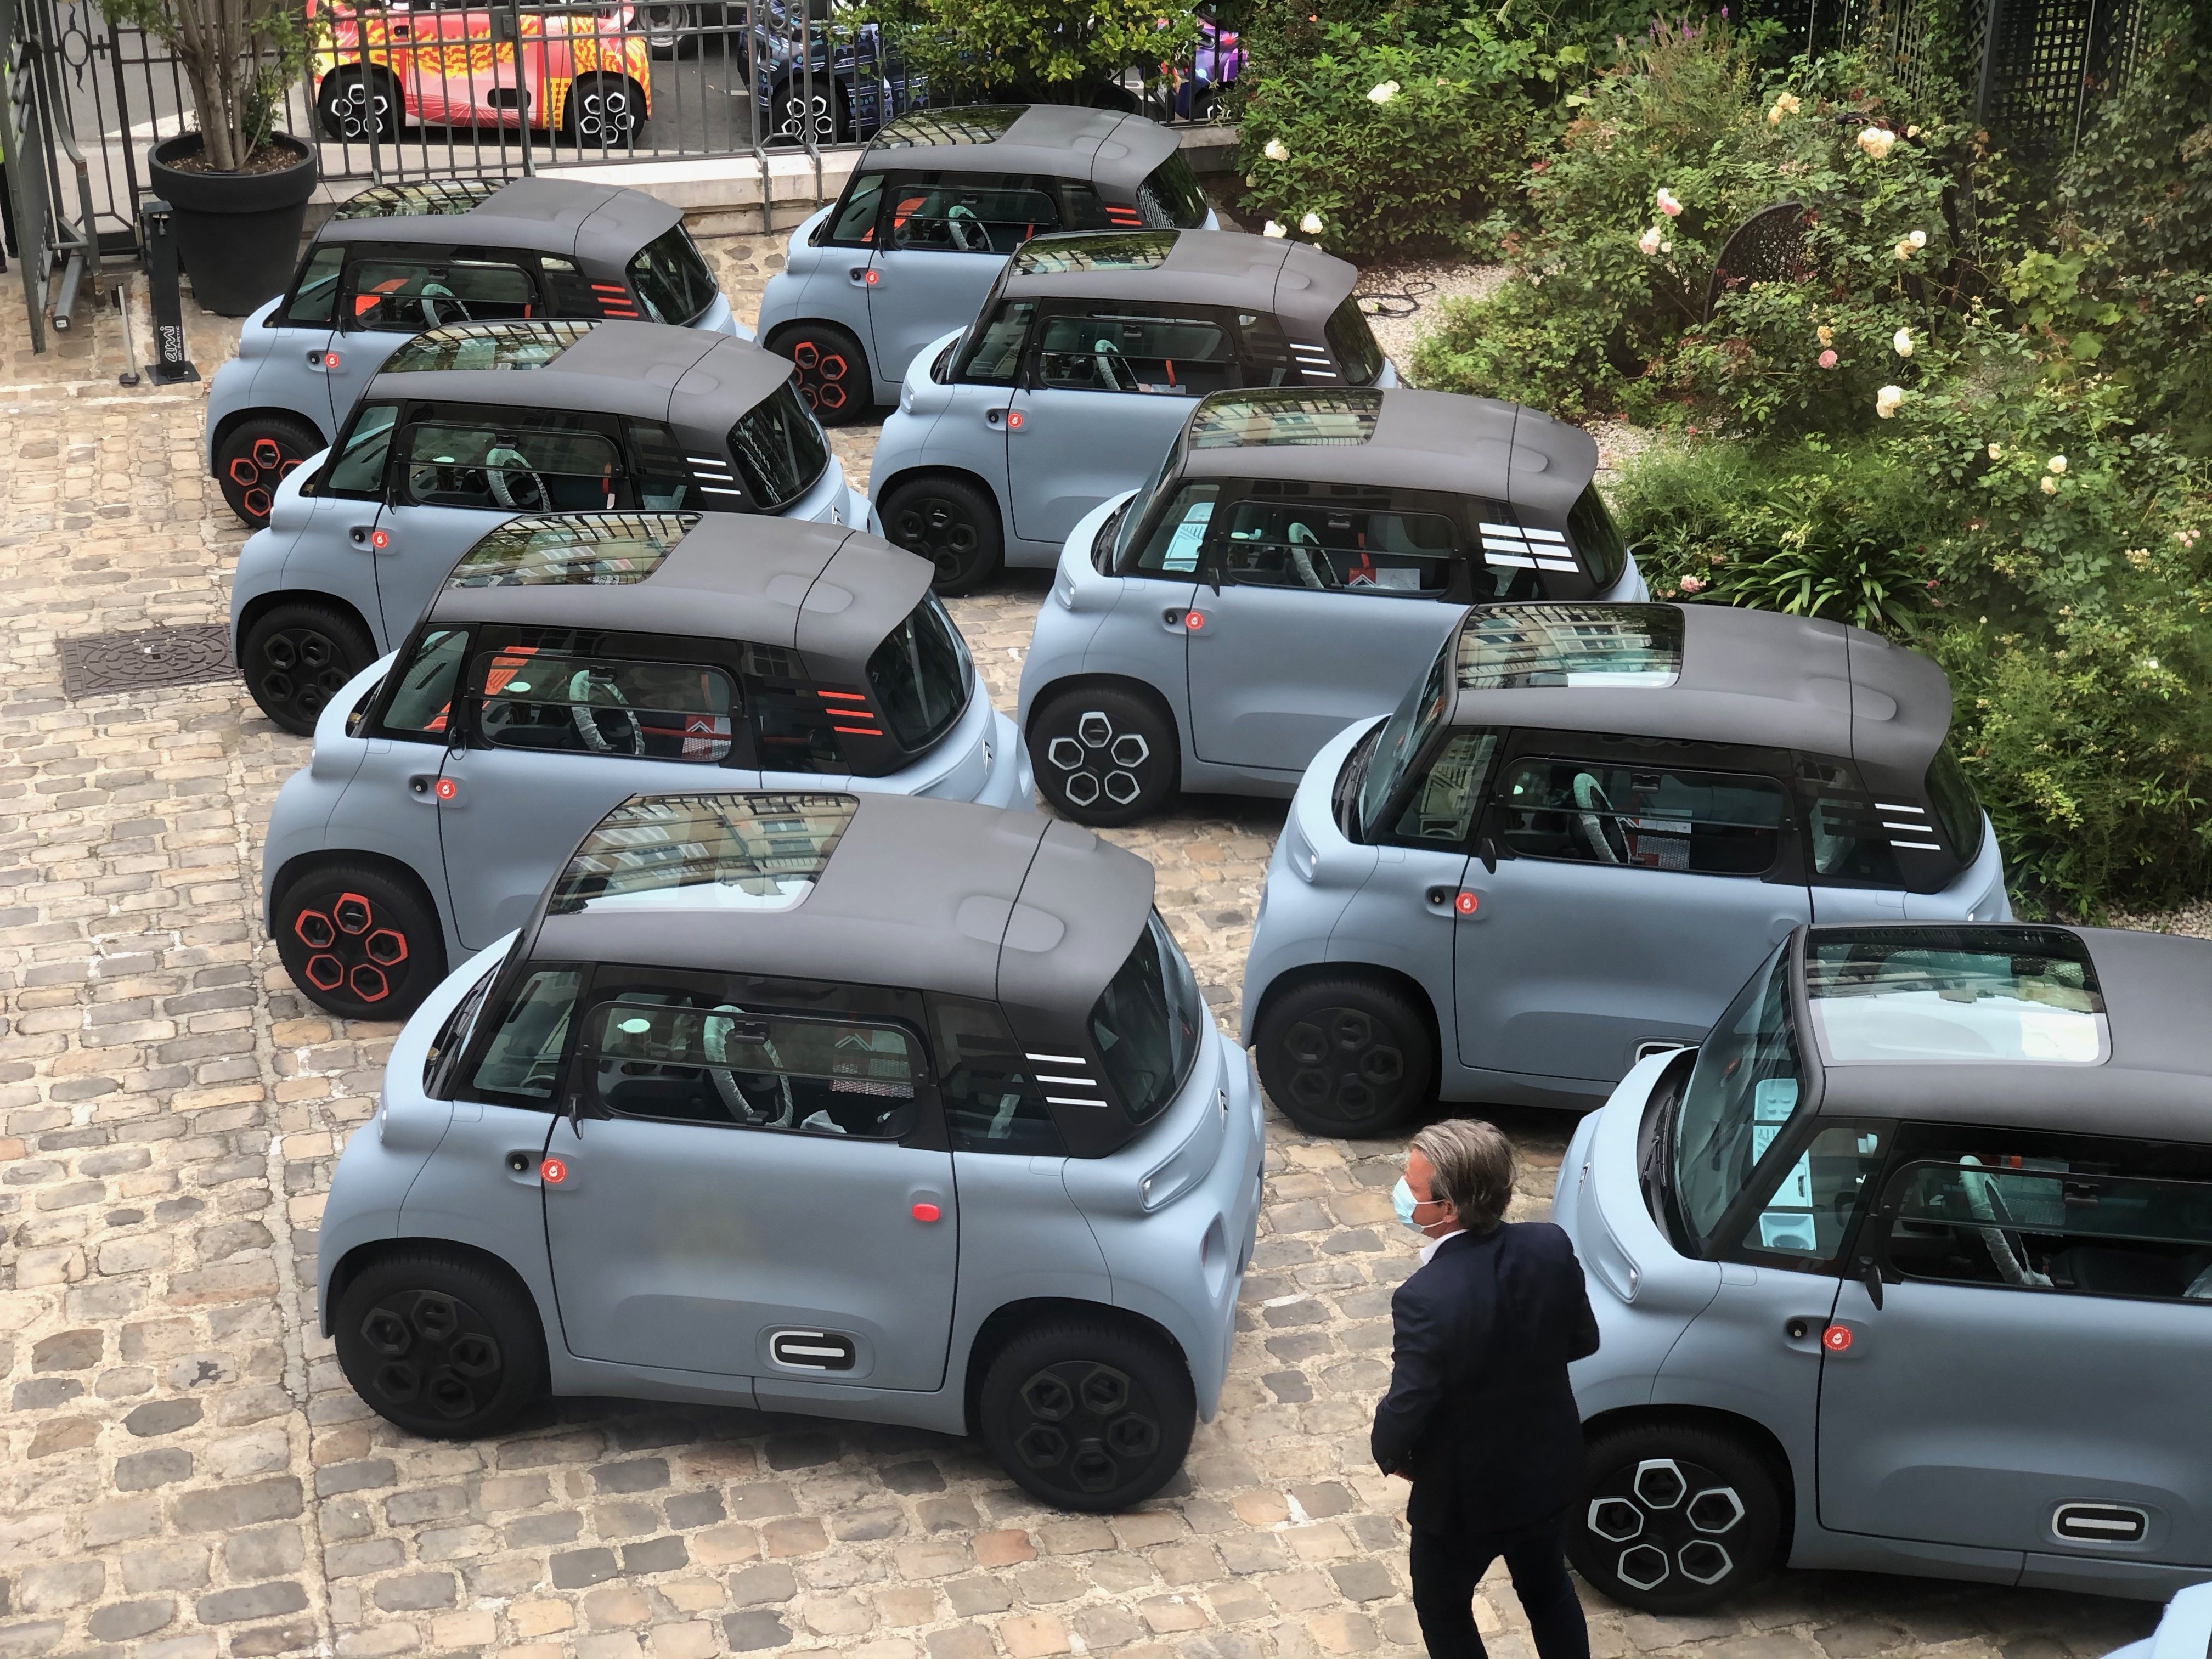 Test] Citroën Ami – 100% ëlectric : une voiture électrique entre deux mondes